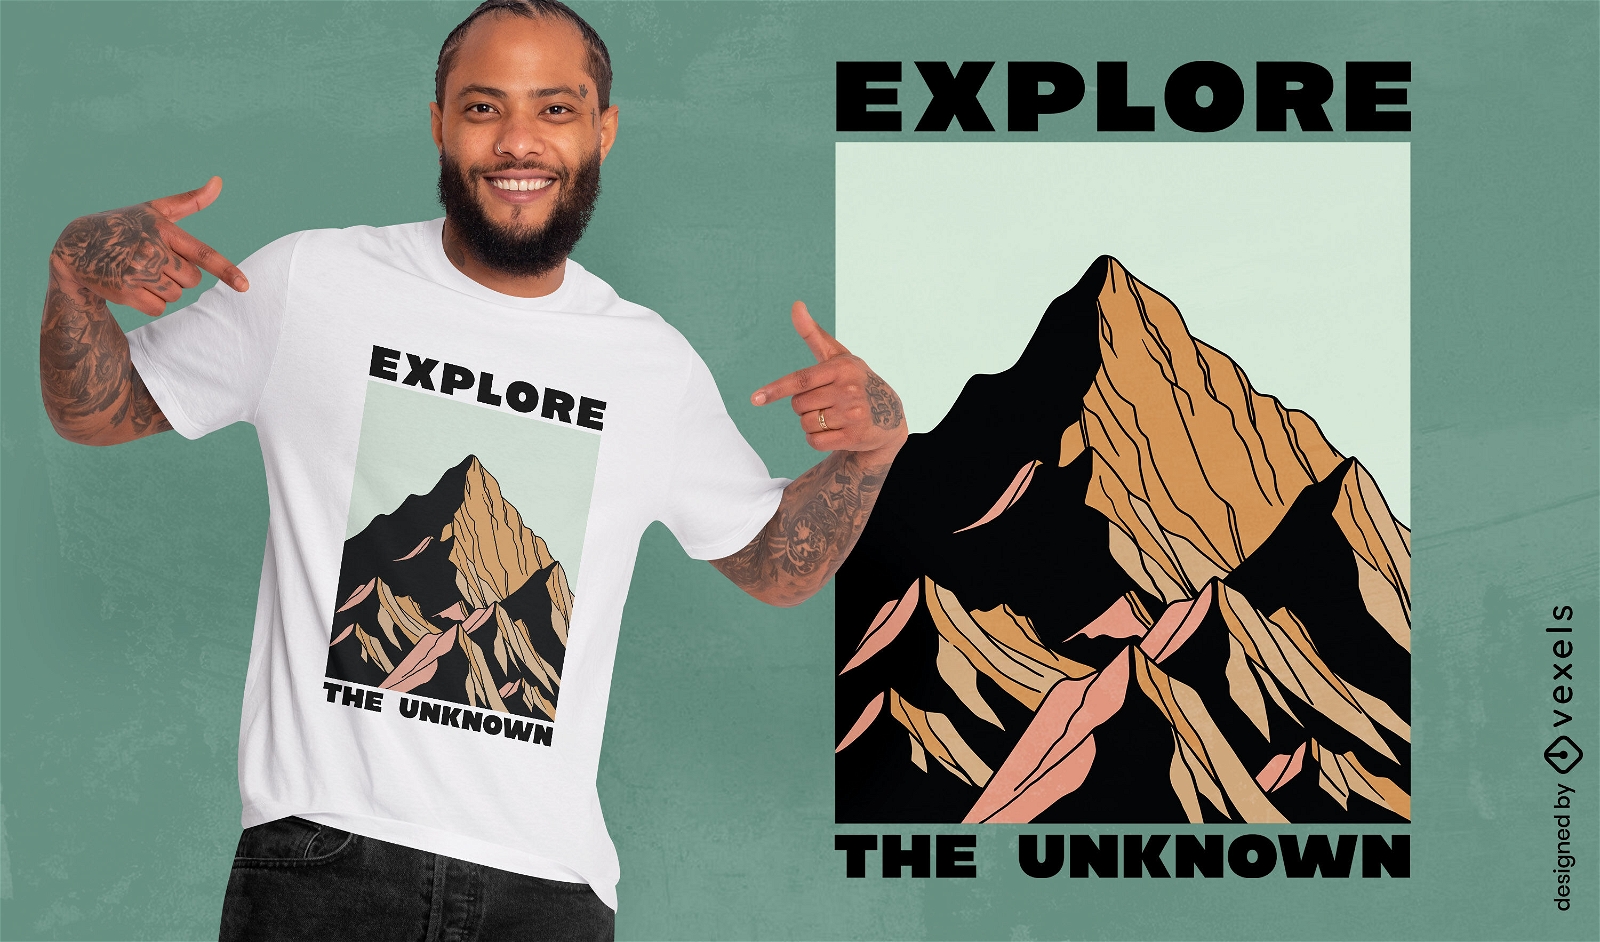 Entdecken Sie das unbekannte Berg-T-Shirt-Design